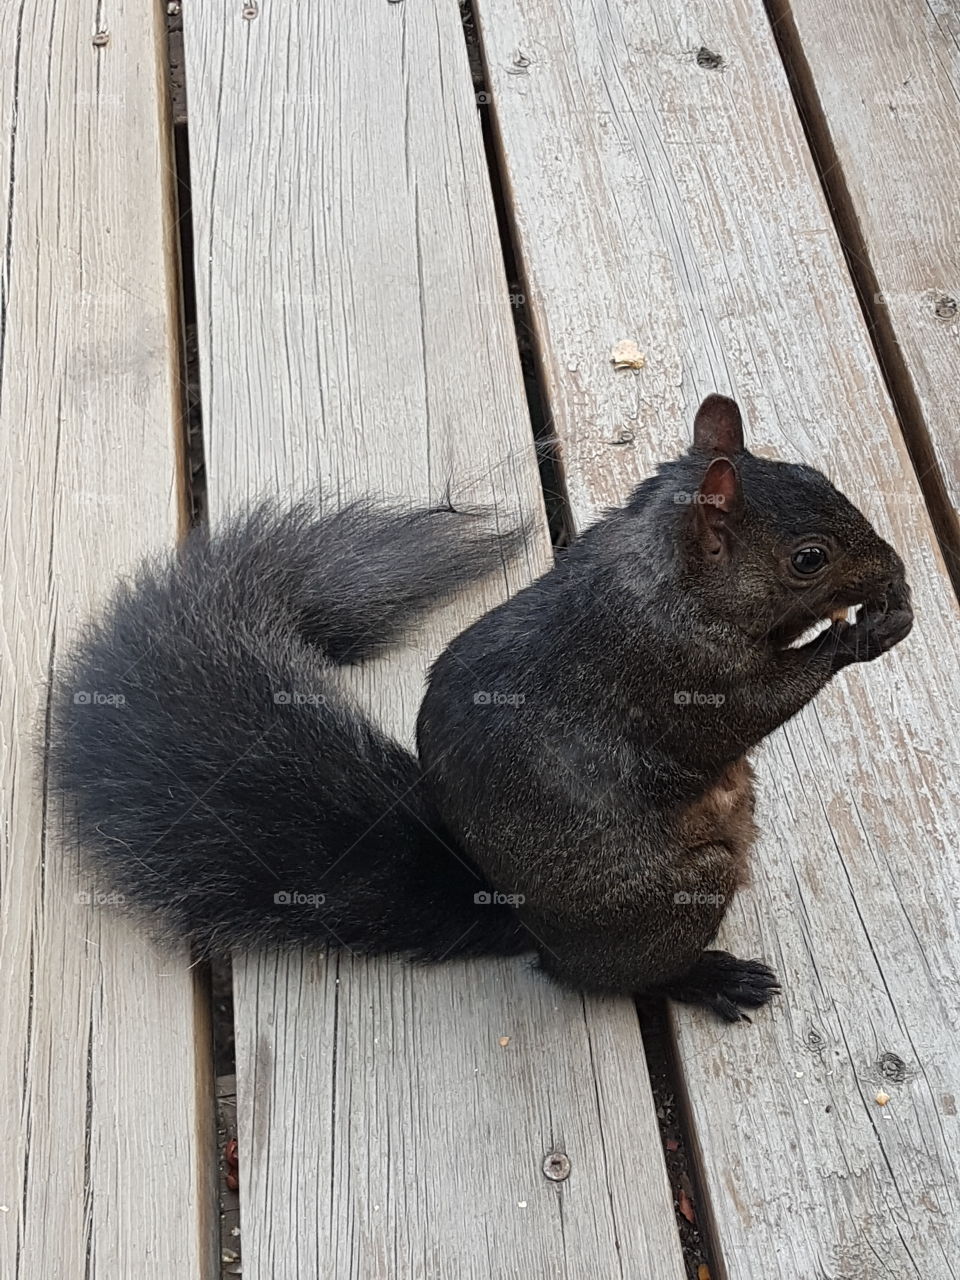 Friendly Feeding Squirrel